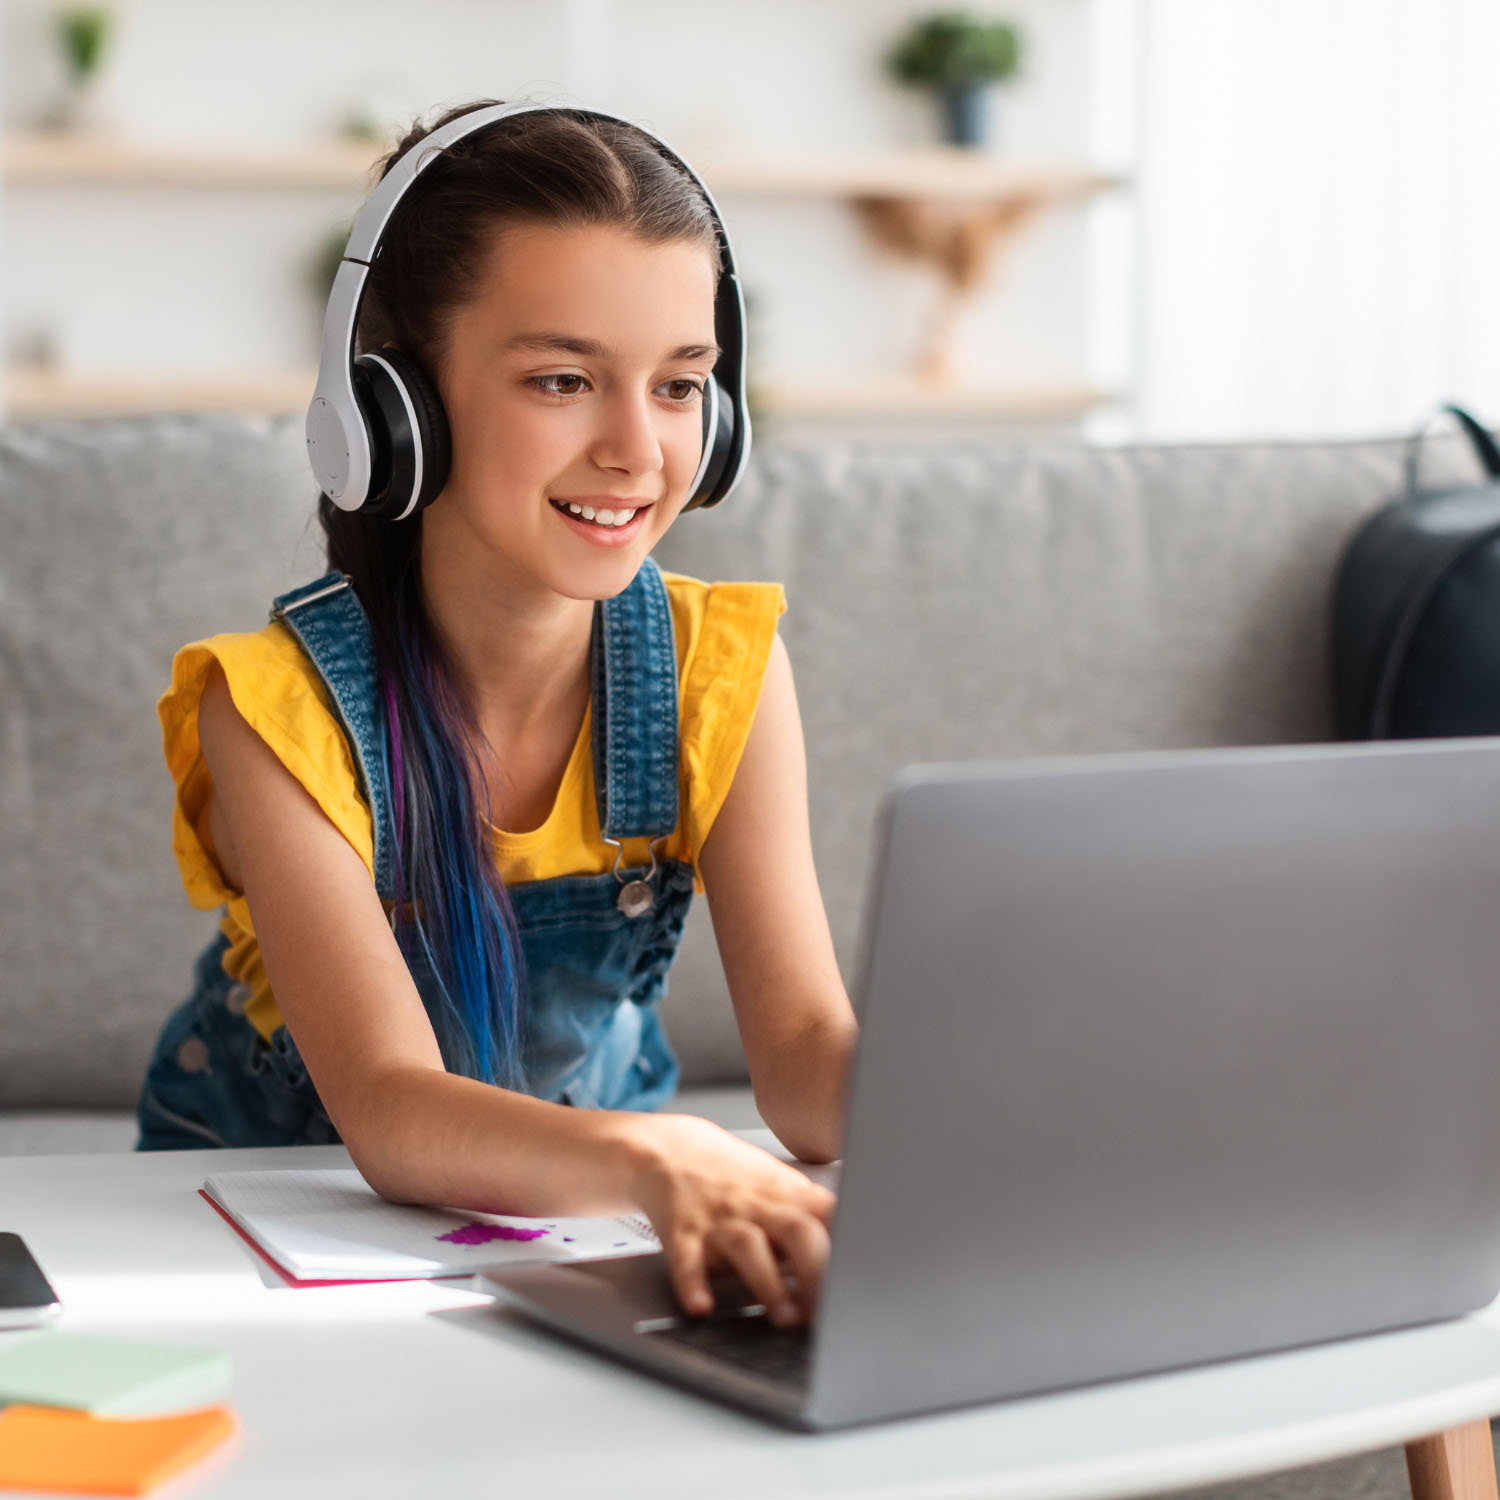 Una niña con auriculares y usando una computadora.